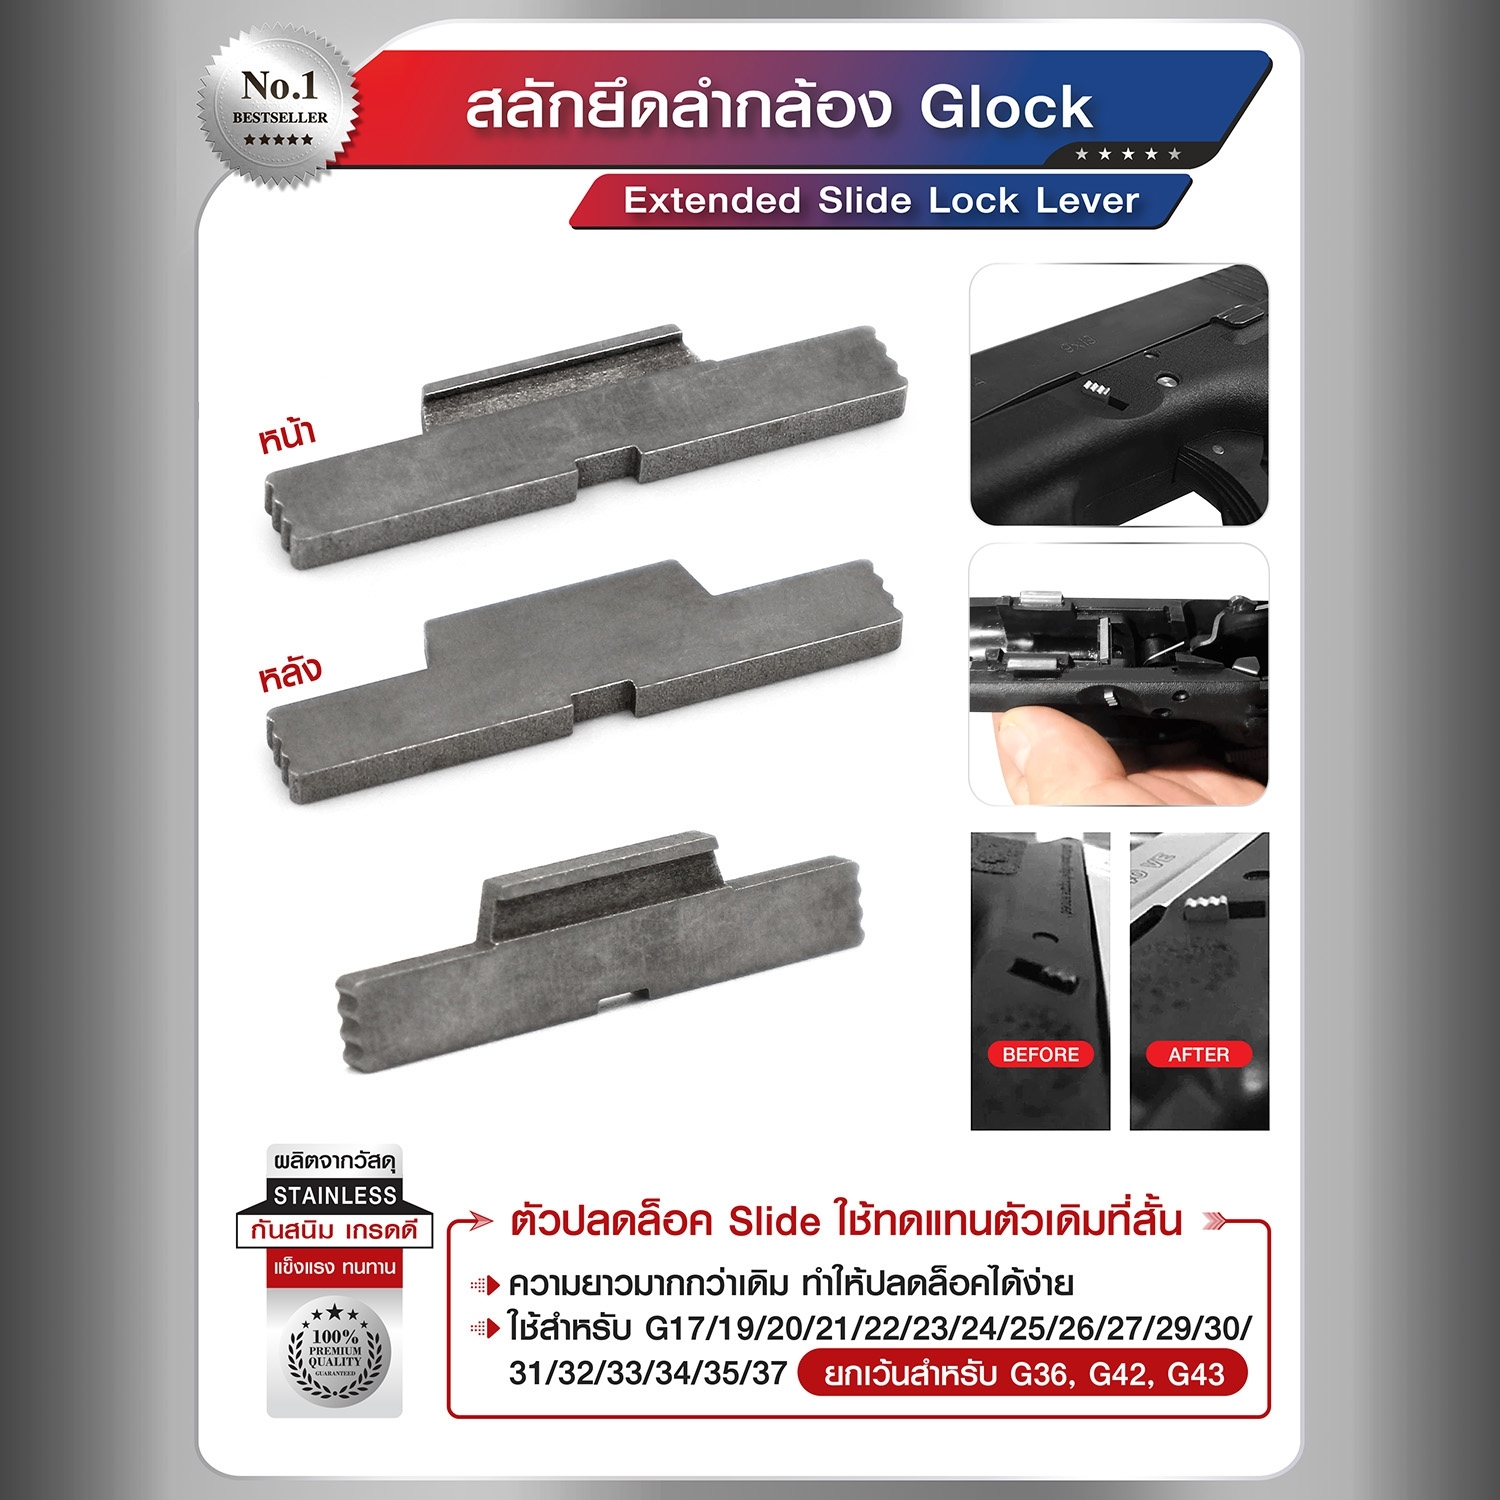 สลักยึดลำกล้อง Glock ( Extended Slide lock lever ) ผลิตจาก Stainless กันสนิม สำหรับรุ่น Gen 1- 4 เท่านั้น